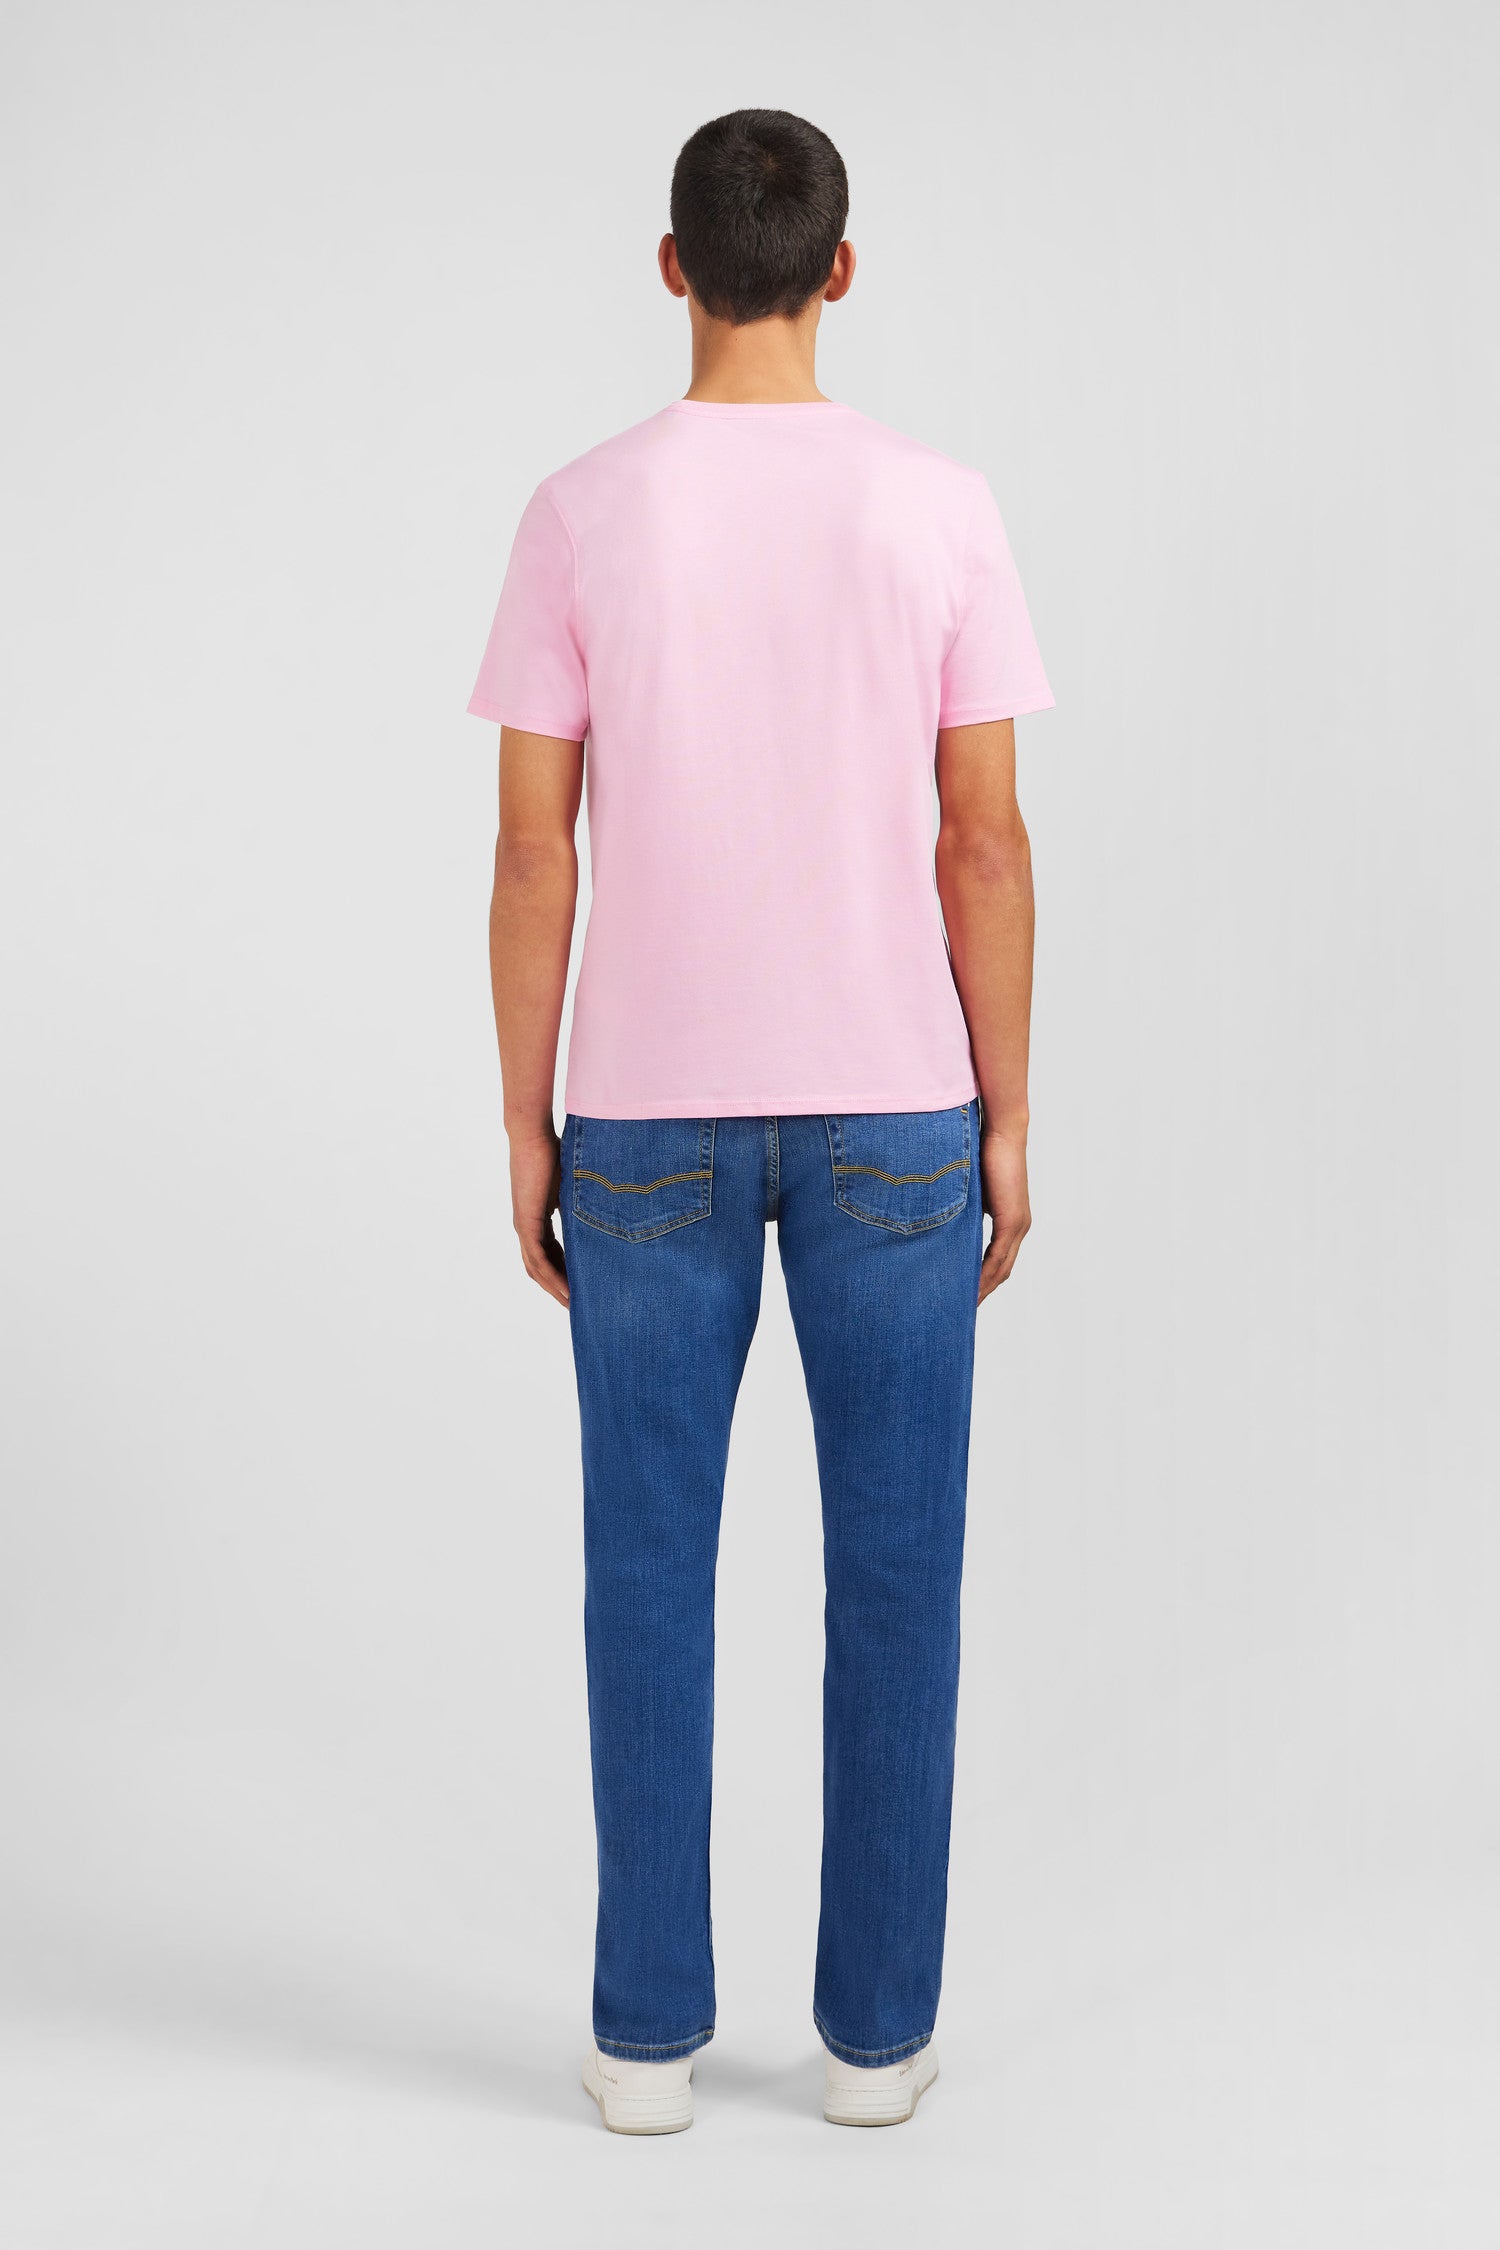 T-shirt rose col rond à manches courtes